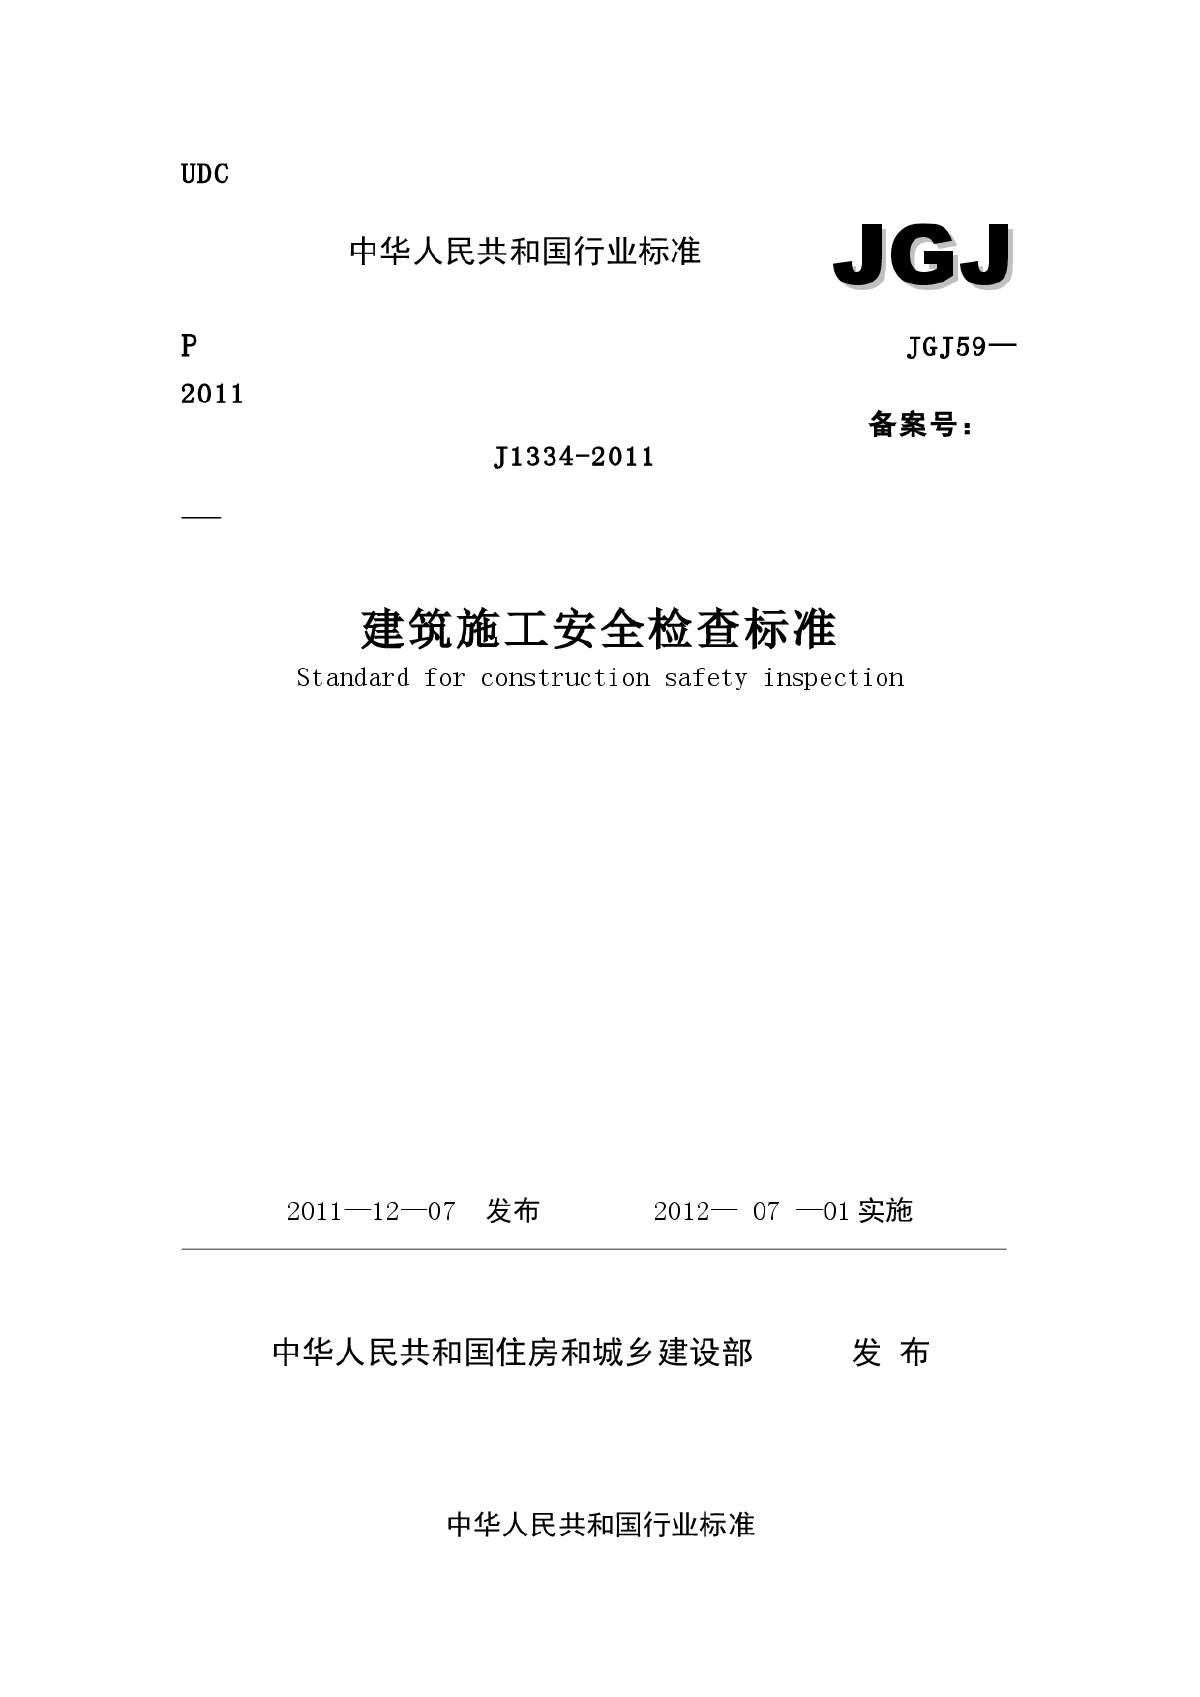 JGJ 59-2011(安全检查标准)